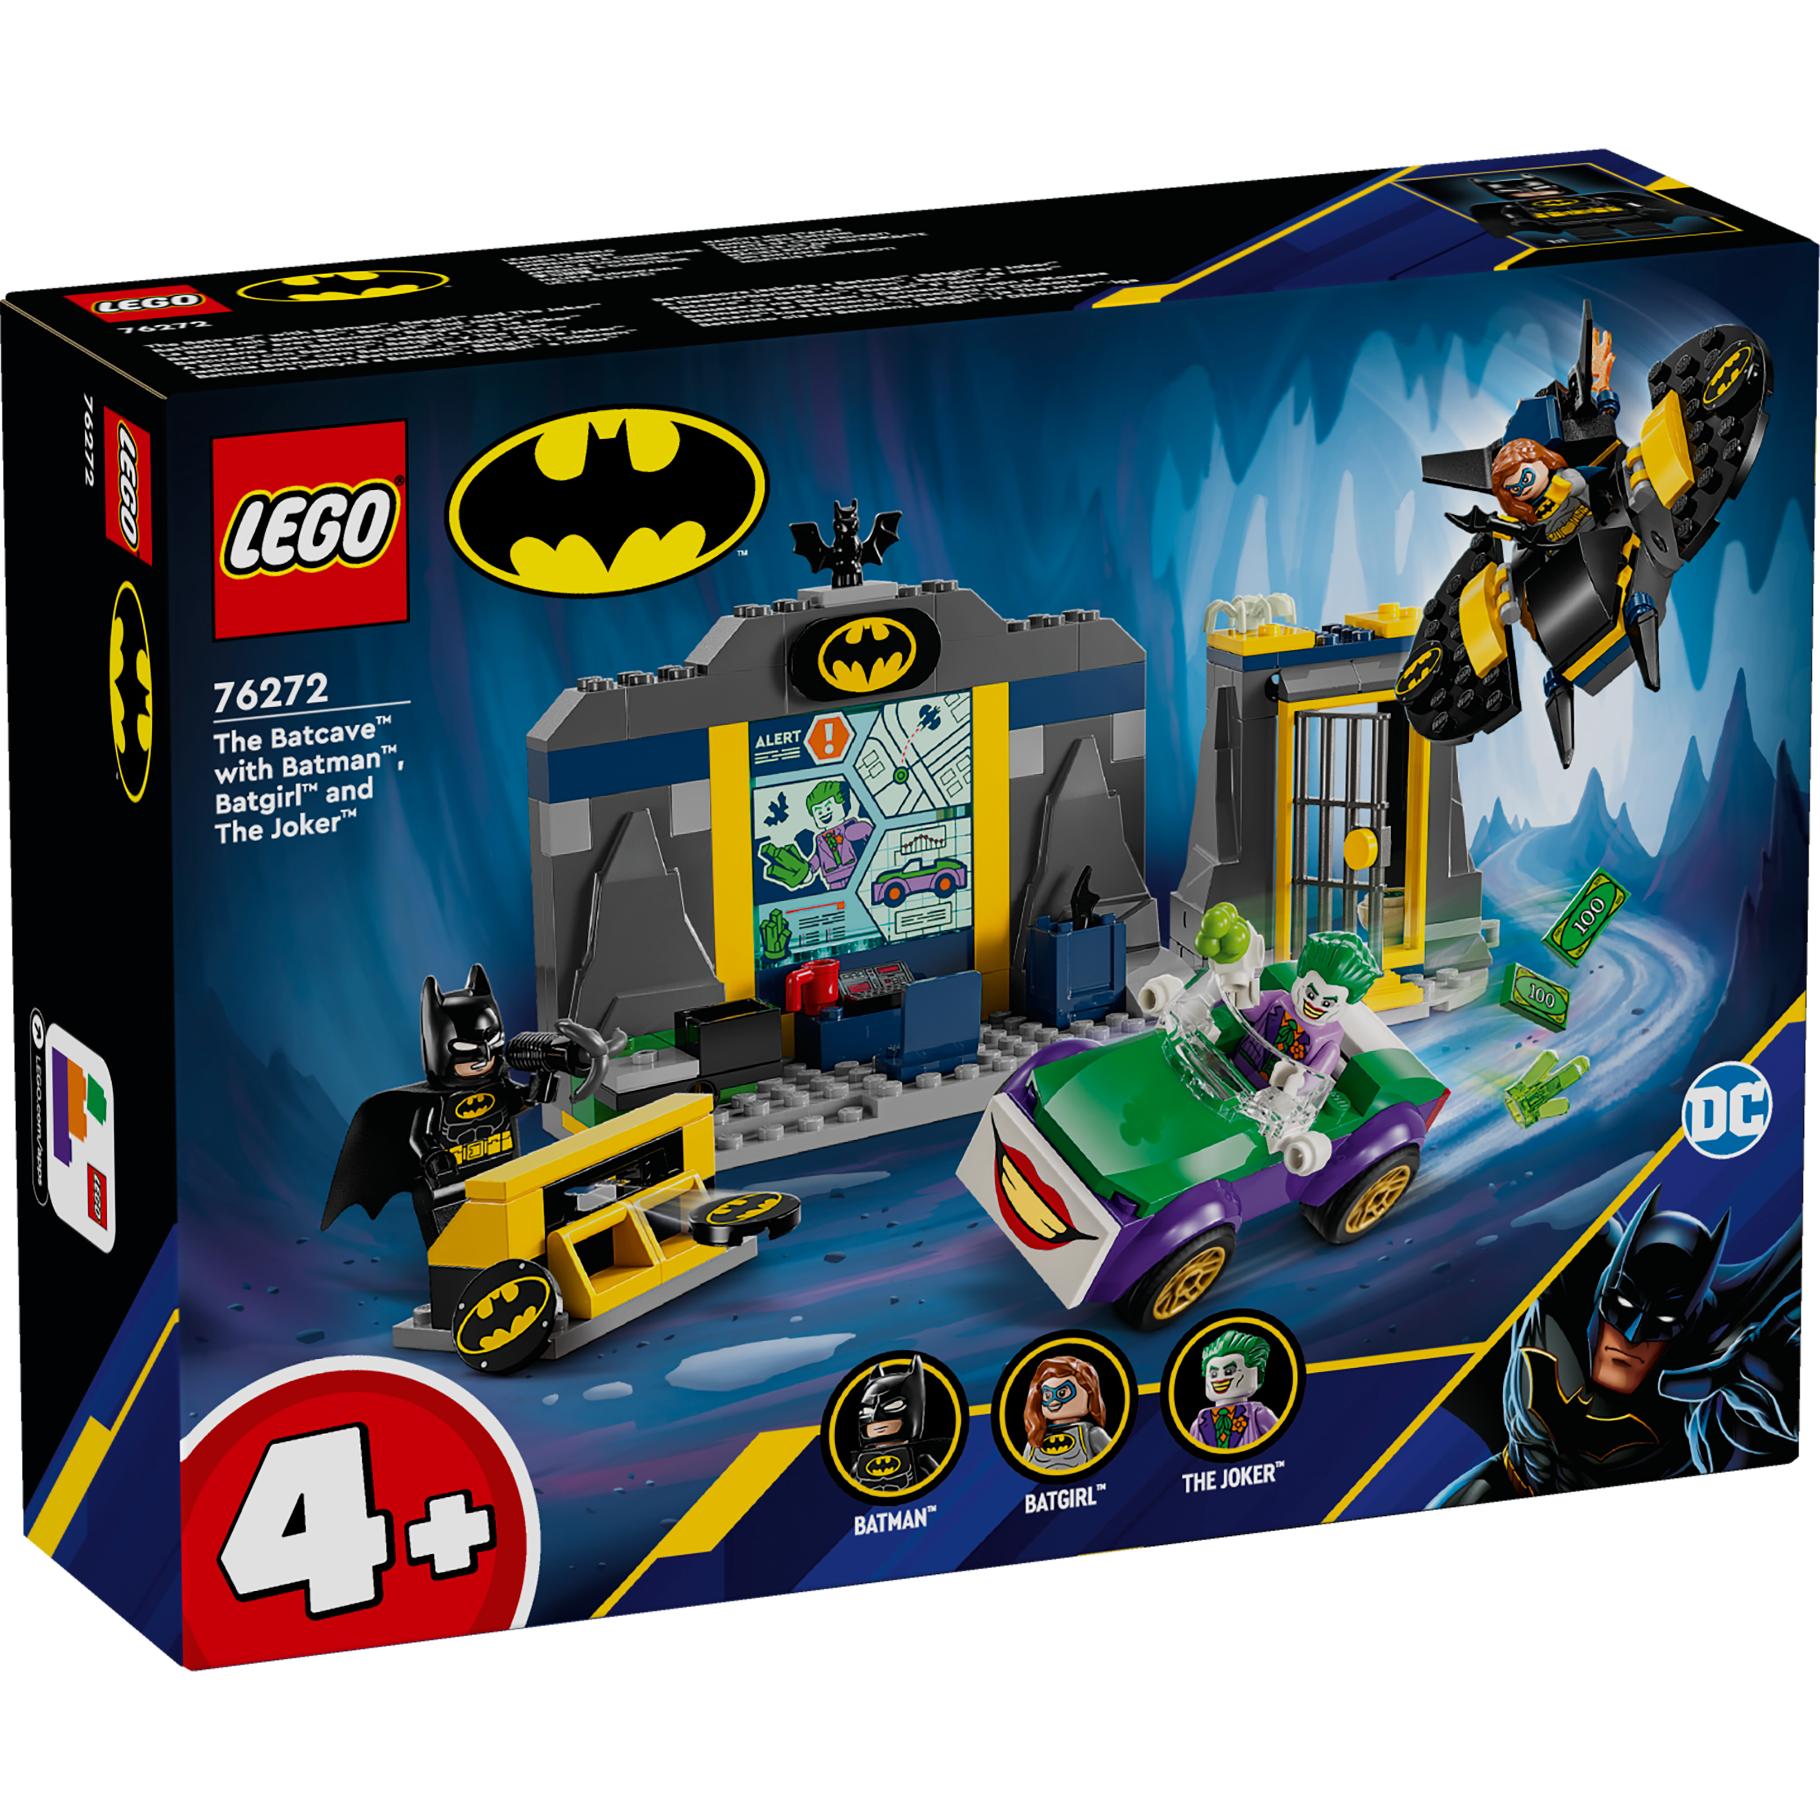 Top1Toys LEGO 76272 Super Heroes De Batcave met Batman, Batgirl en The Joker